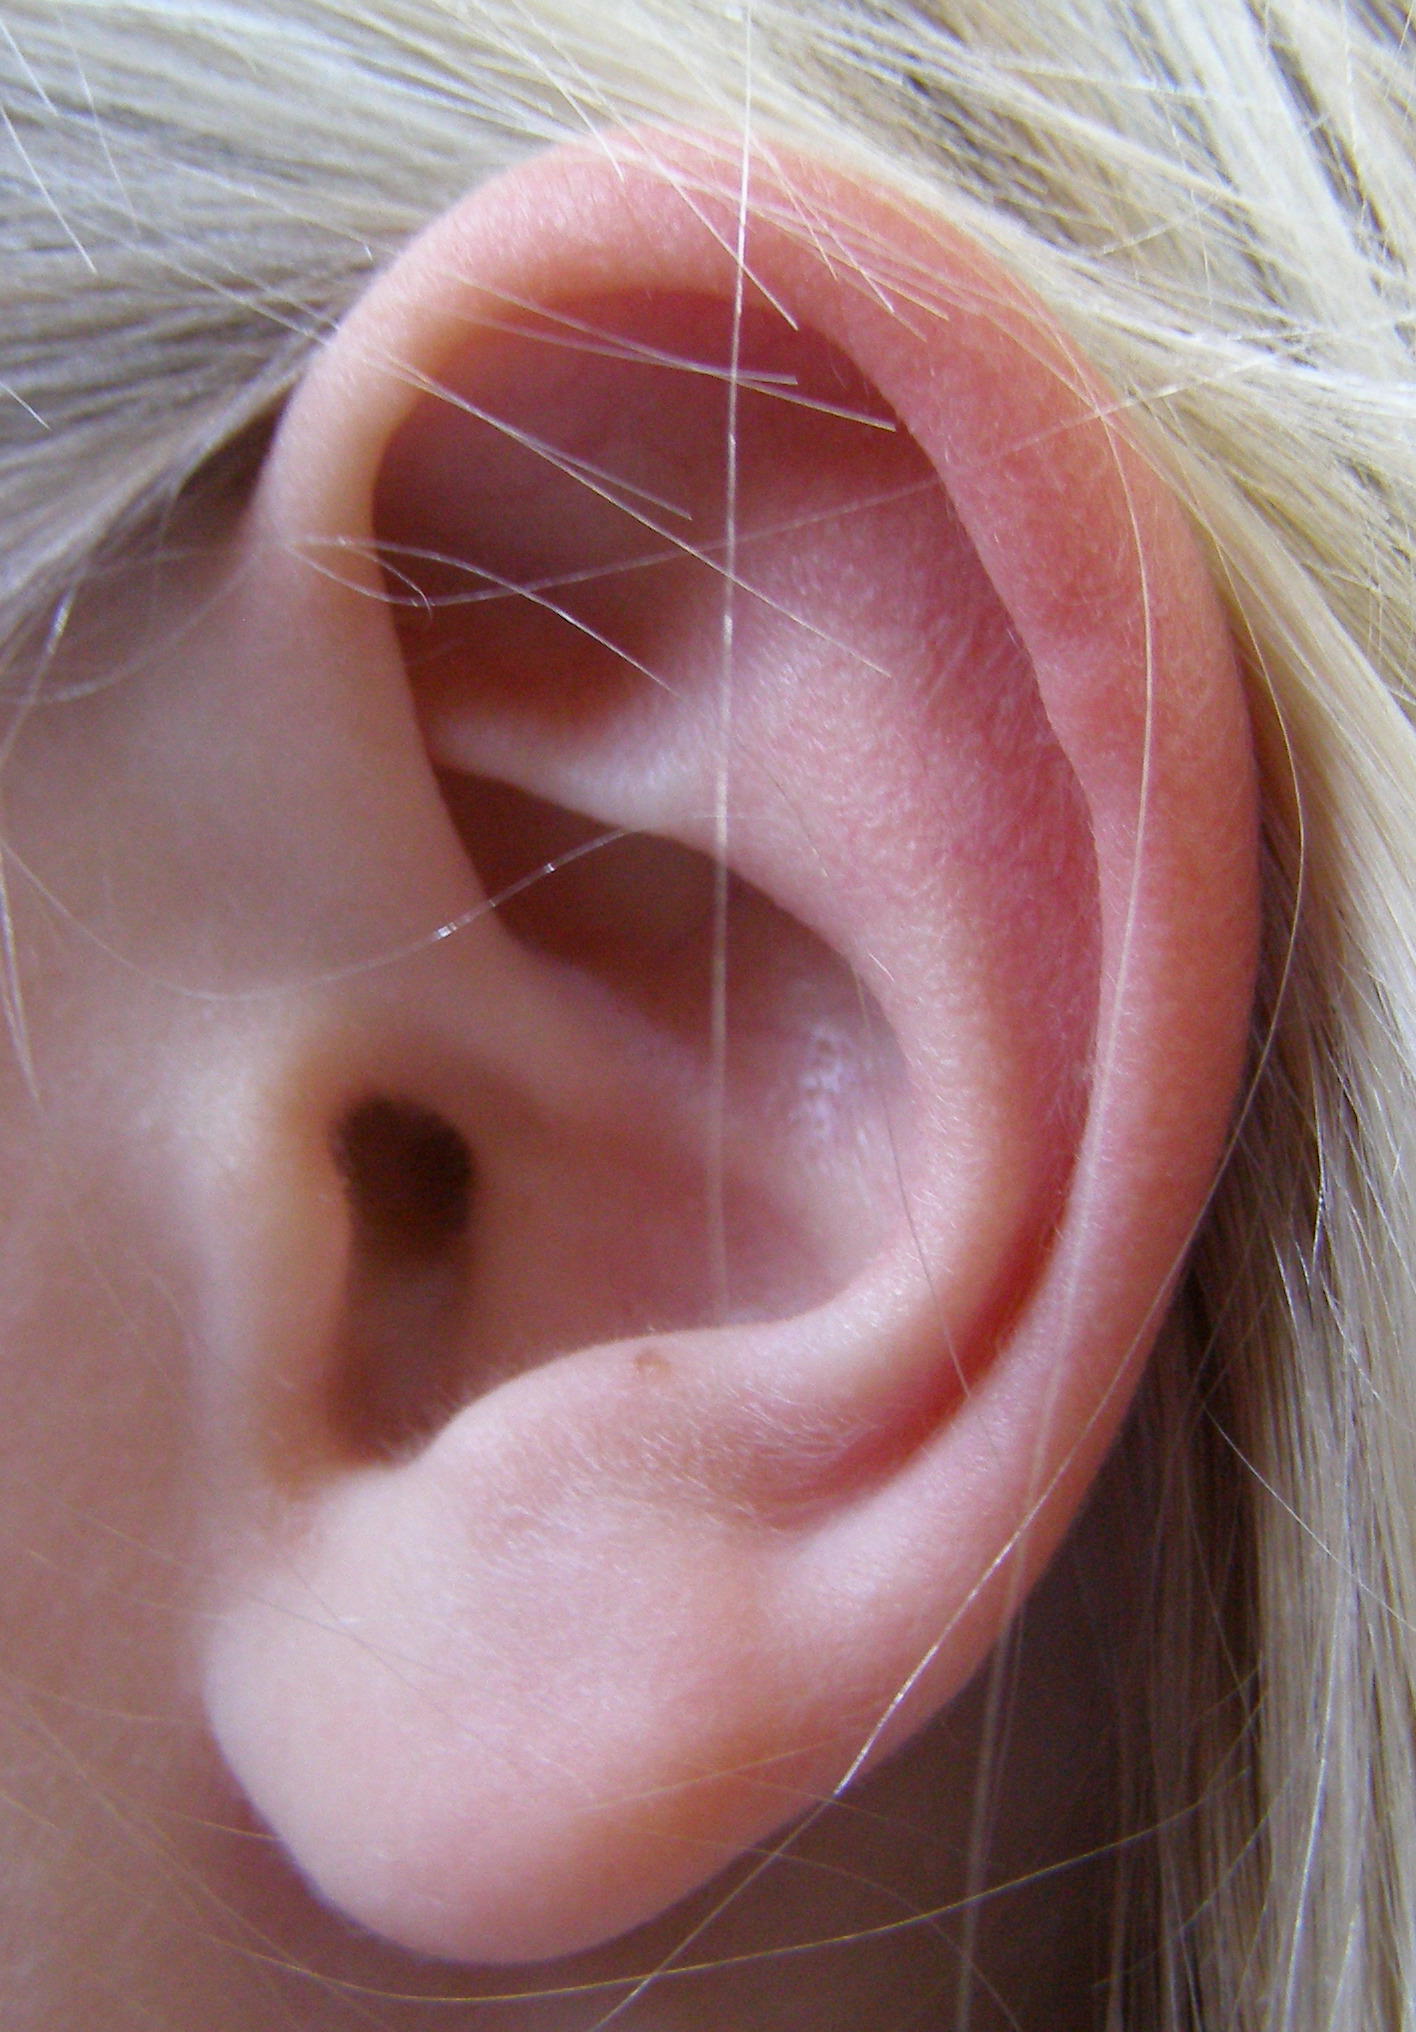 Left ear